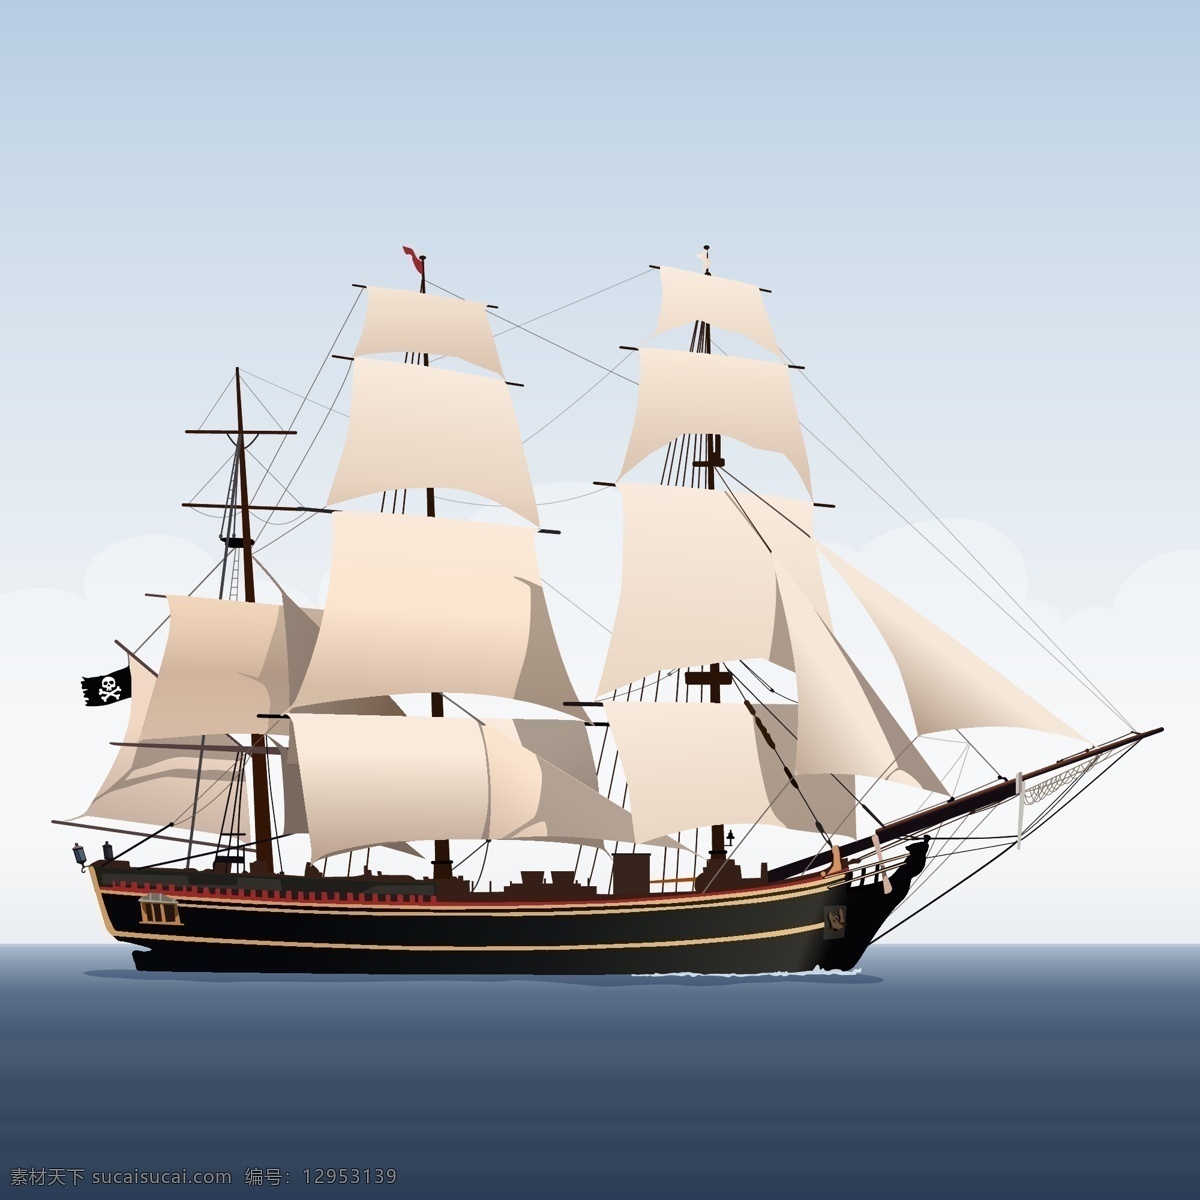 帆船矢量素材 帆船矢量 帆船素材 帆船背景 帆船 共享设计矢量 现代科技 交通工具